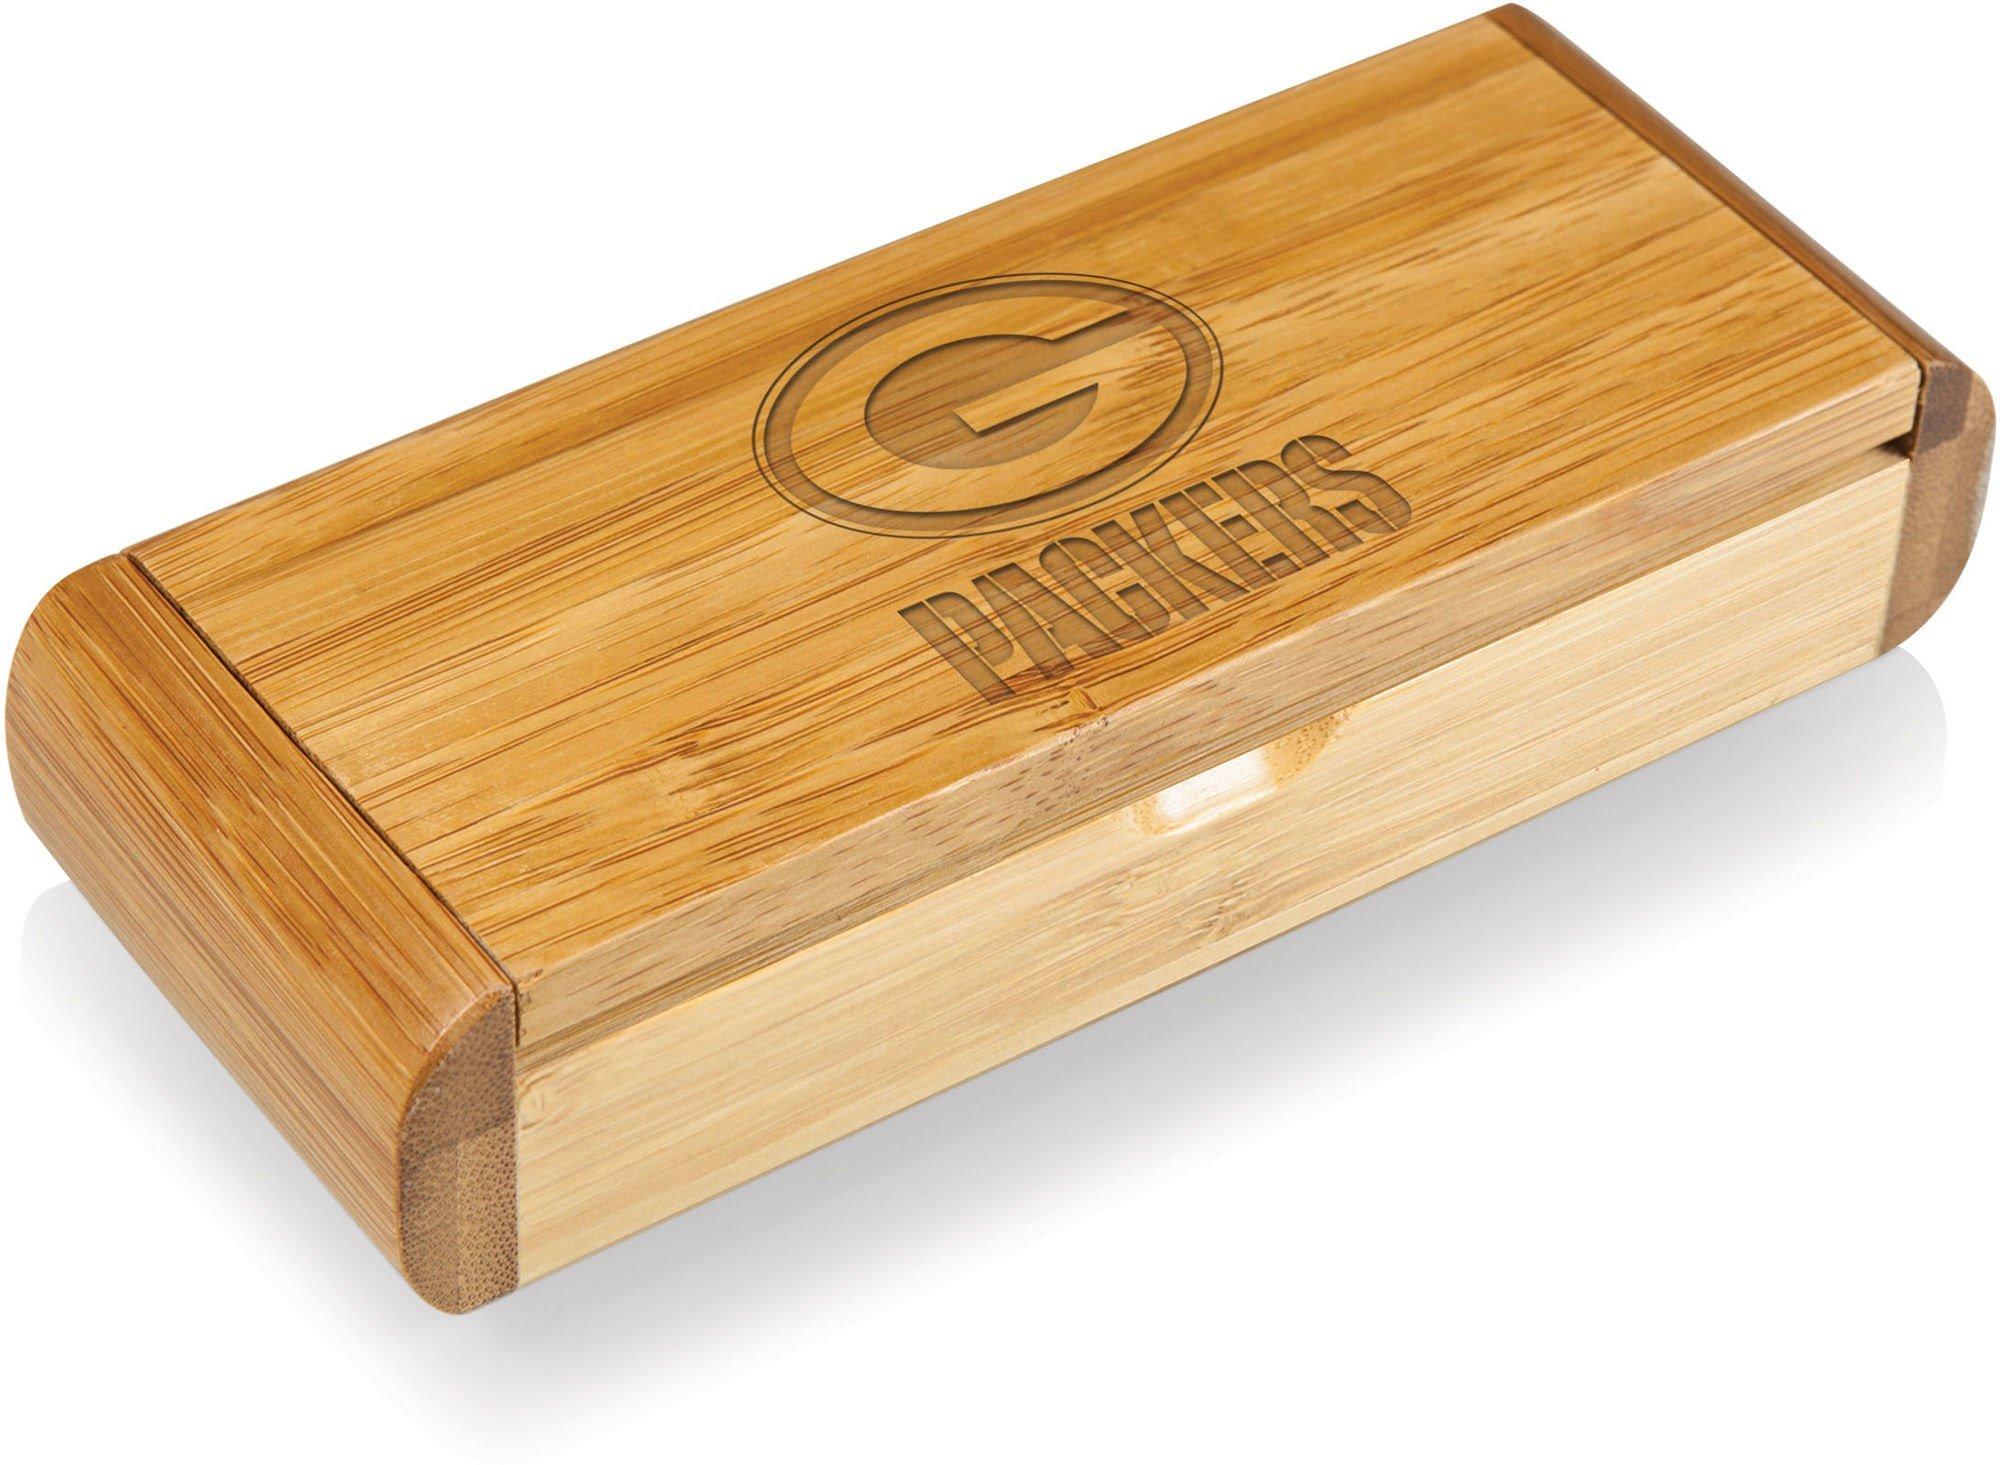 Green Bay Packers Elan Corkscrew Box by Picnic